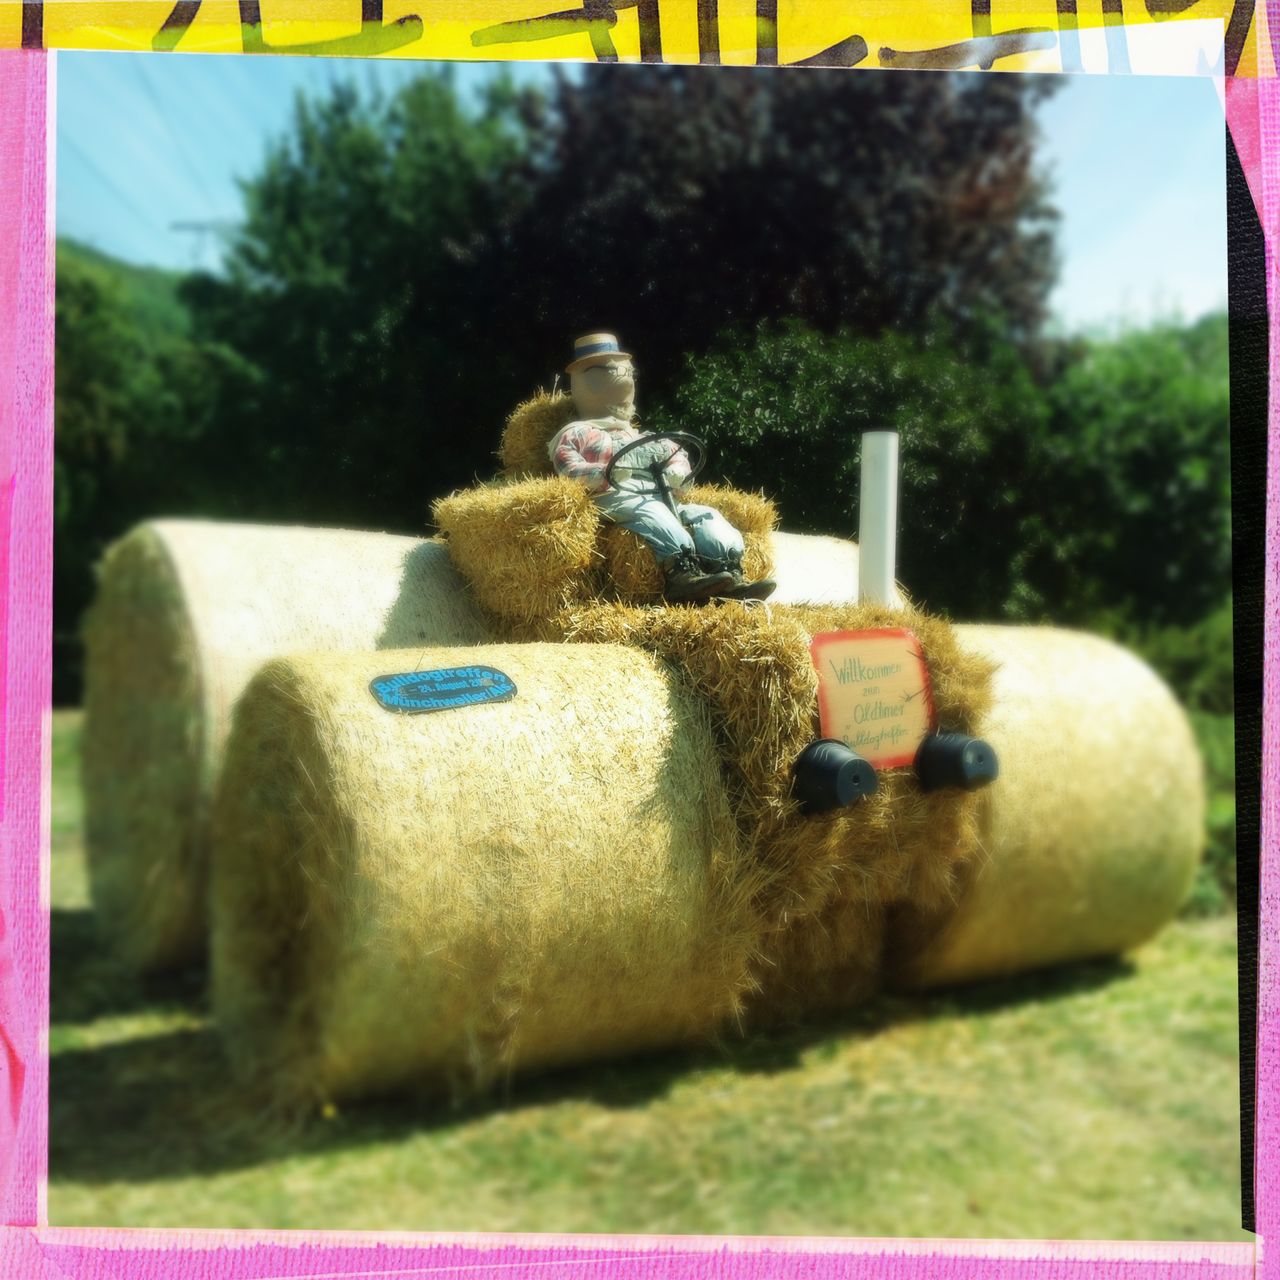 Ein Traktor aus Stroballen mit riesigen Rädern und einer Puppe als Traktorist. Das Bild hat einen gelb-rosa Rahmen.